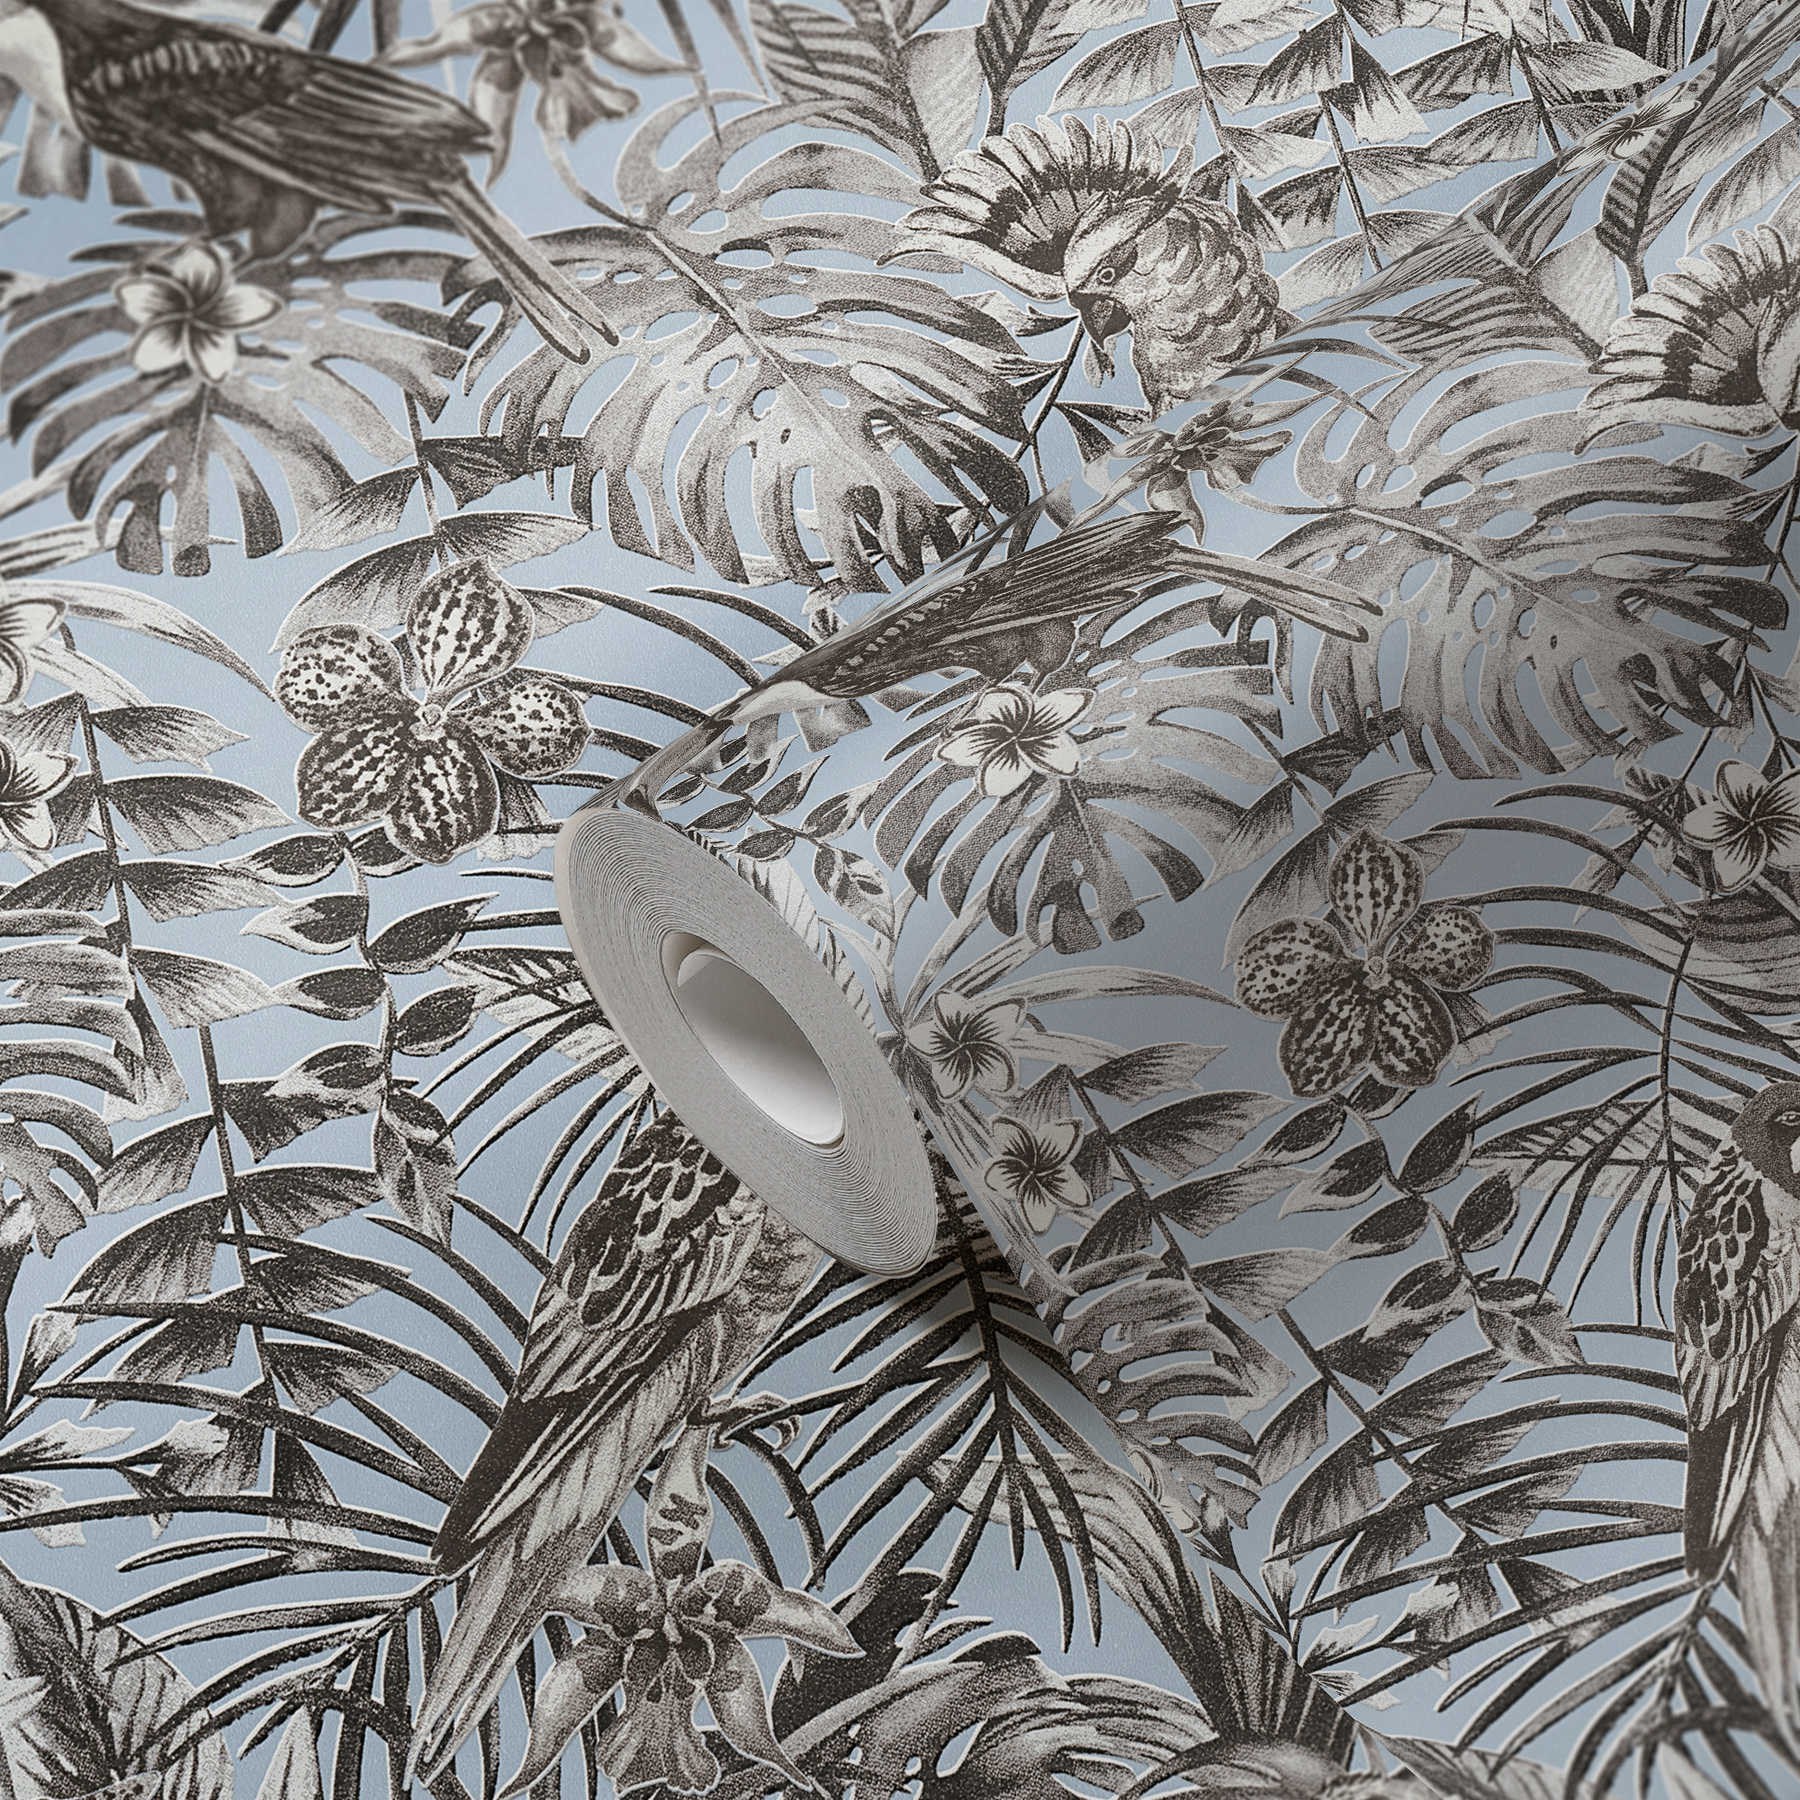             Exotische Tapete tropischen Vögel, Blüten & Blätter – Grau, Blau, Weiß
        